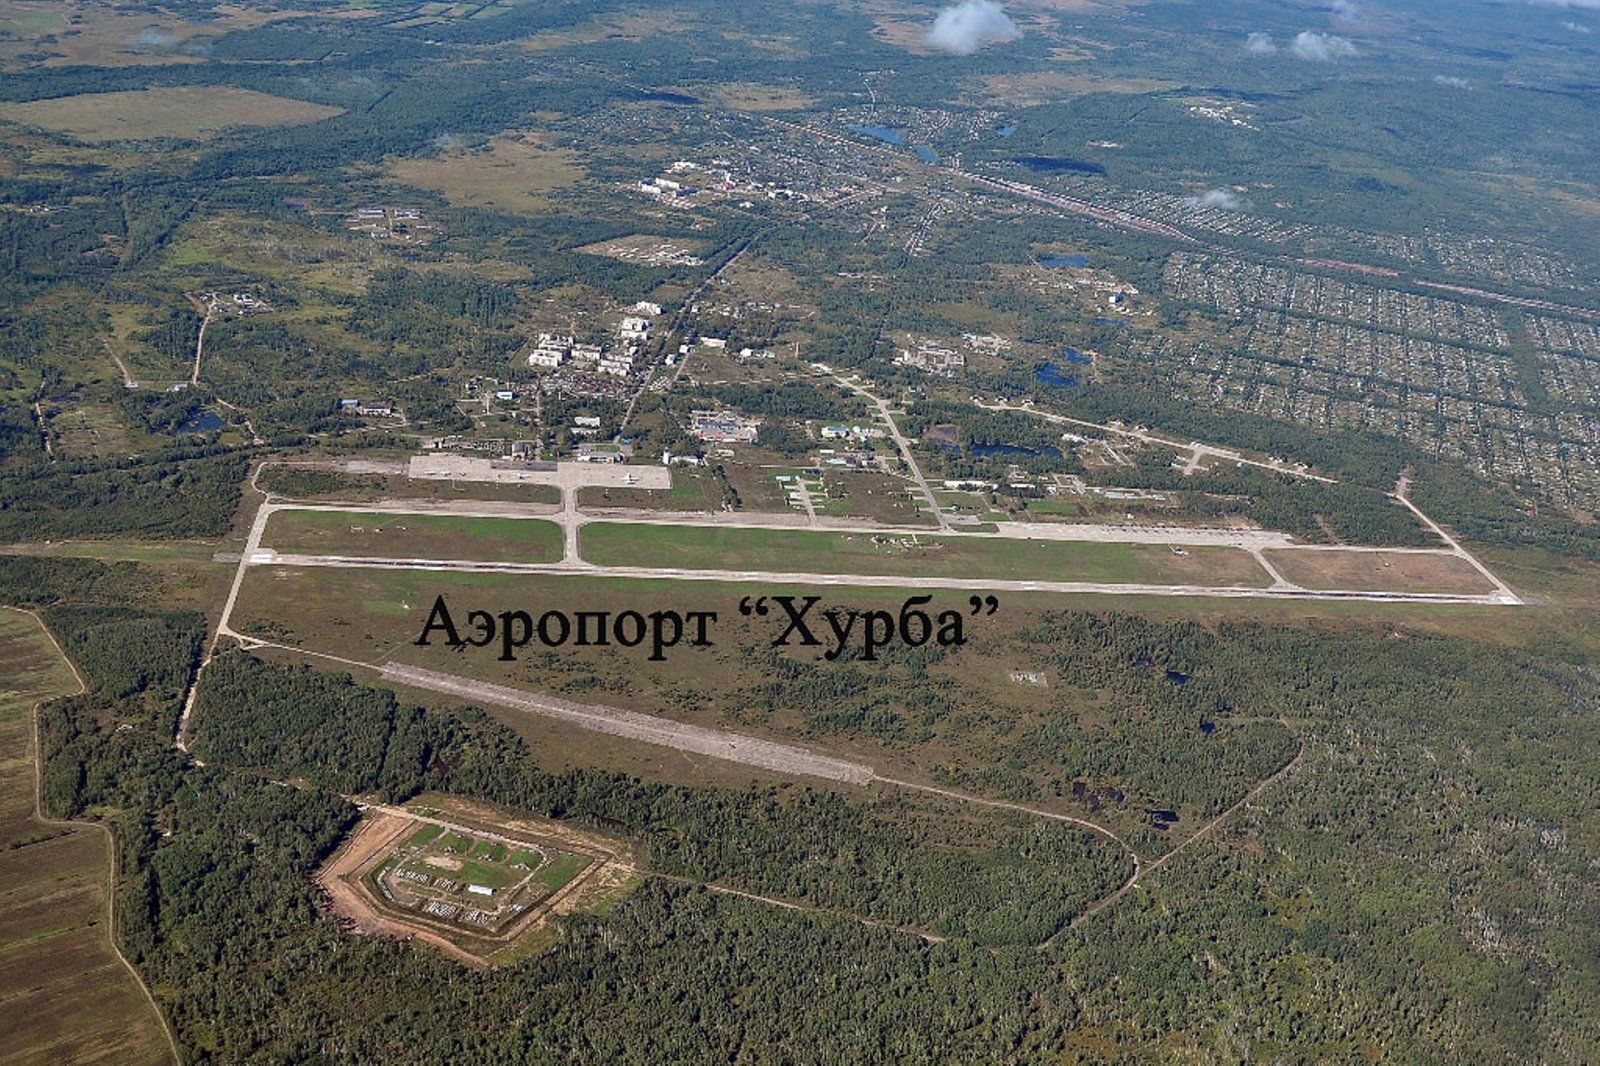 Аэродром Комсомольск-на-Амуре (Хурба) 2.jpg